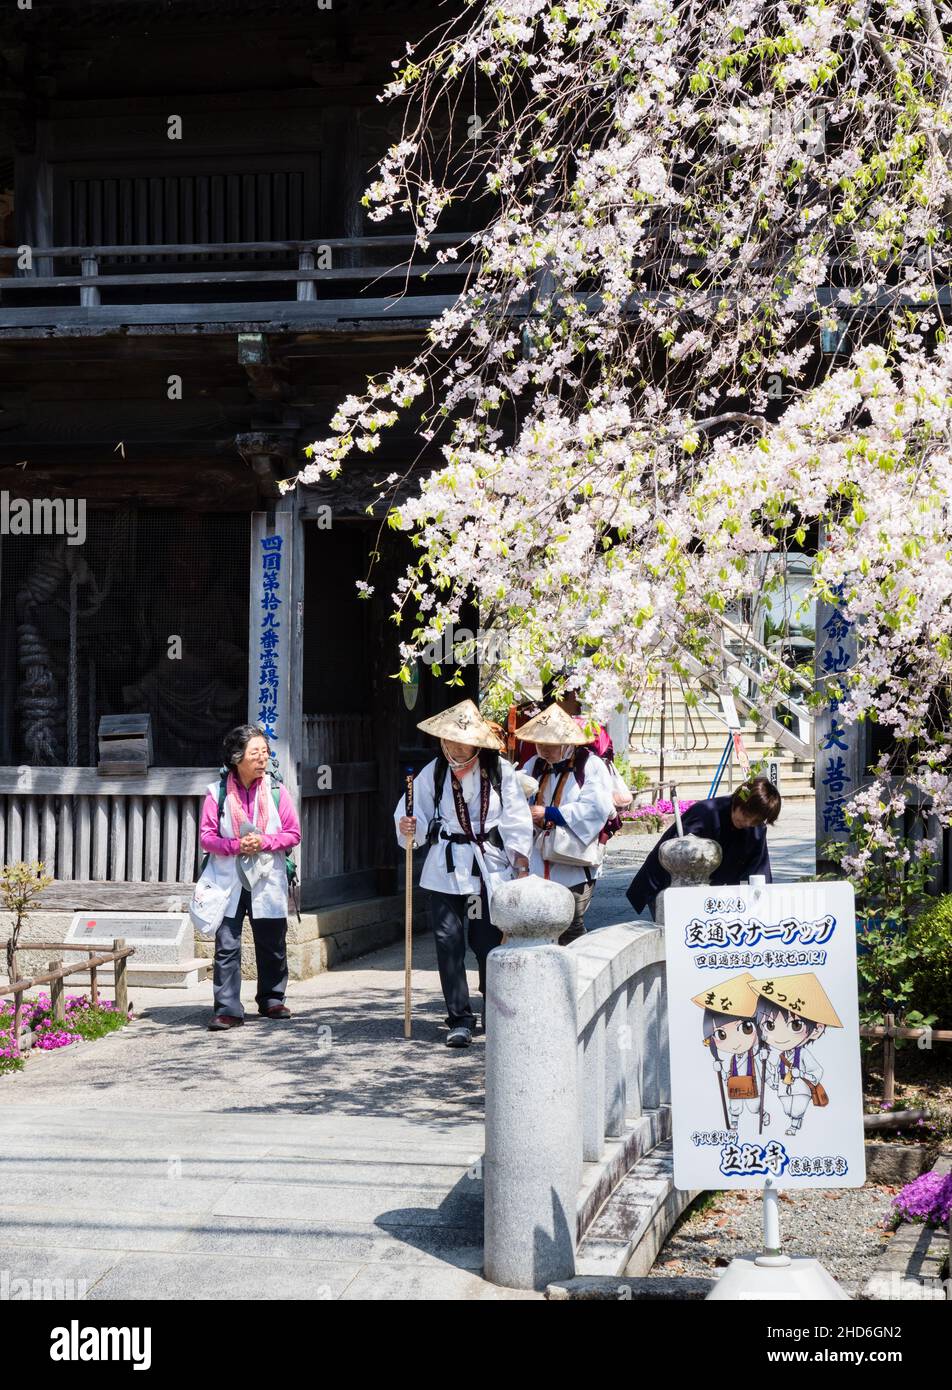 Komatsushima, Japon - 4 avril 2018 : pèlerins sortant de la porte de Tatsueji, temple numéro 19 du pèlerinage de Shikoku, avec fleurs de cerisiers Banque D'Images